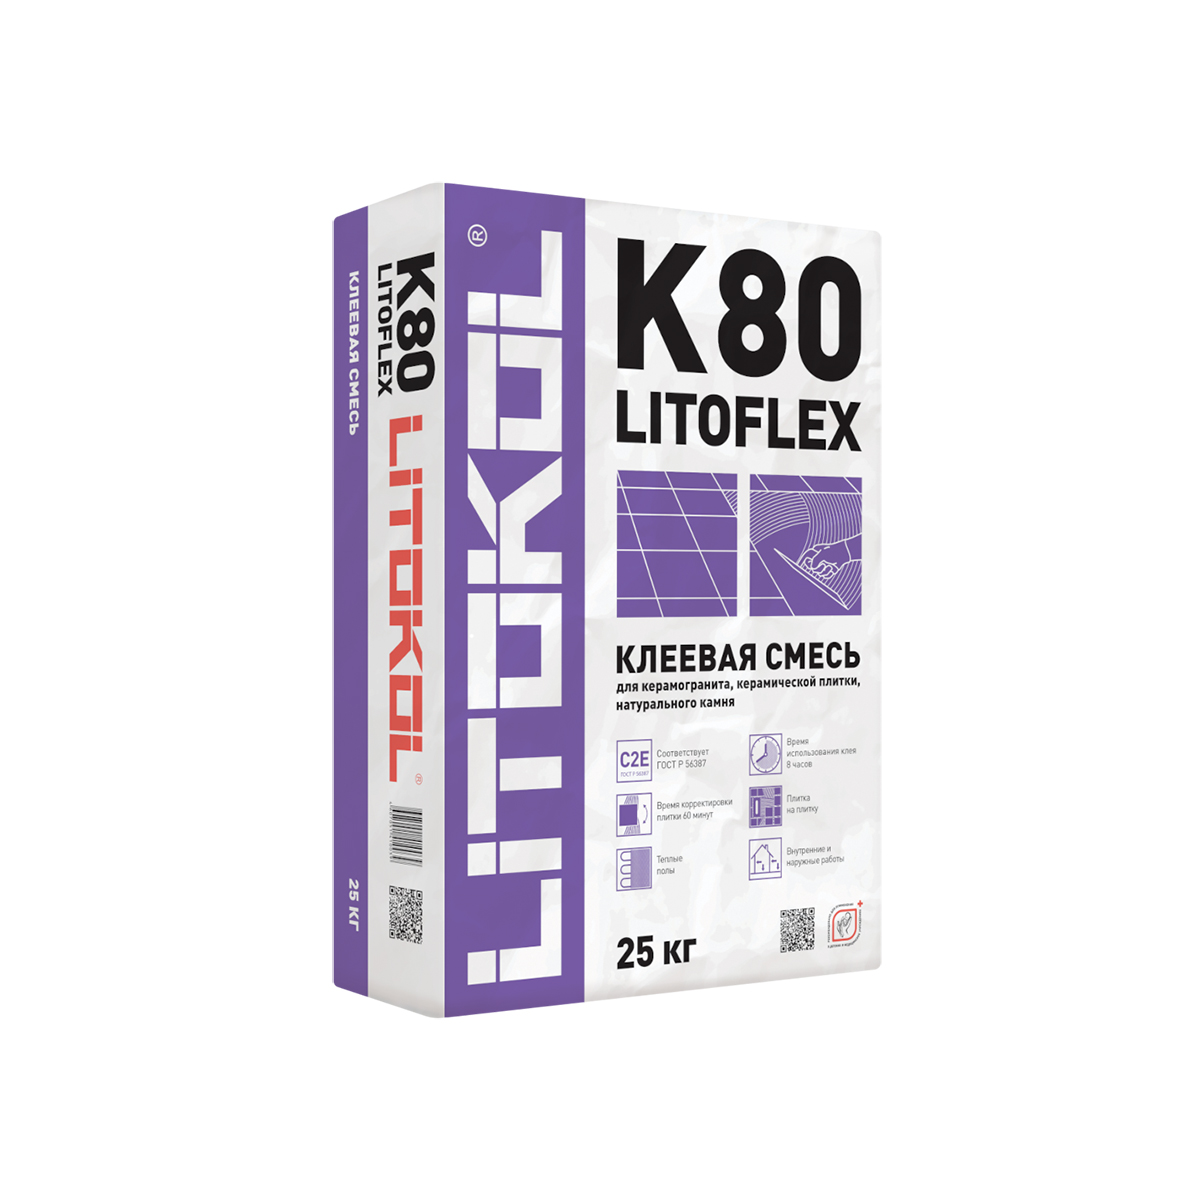 Клей для плитки Litokol Litoflex K80, 25 кг клей для плитки готовый litokol litoacril plus 1 кг